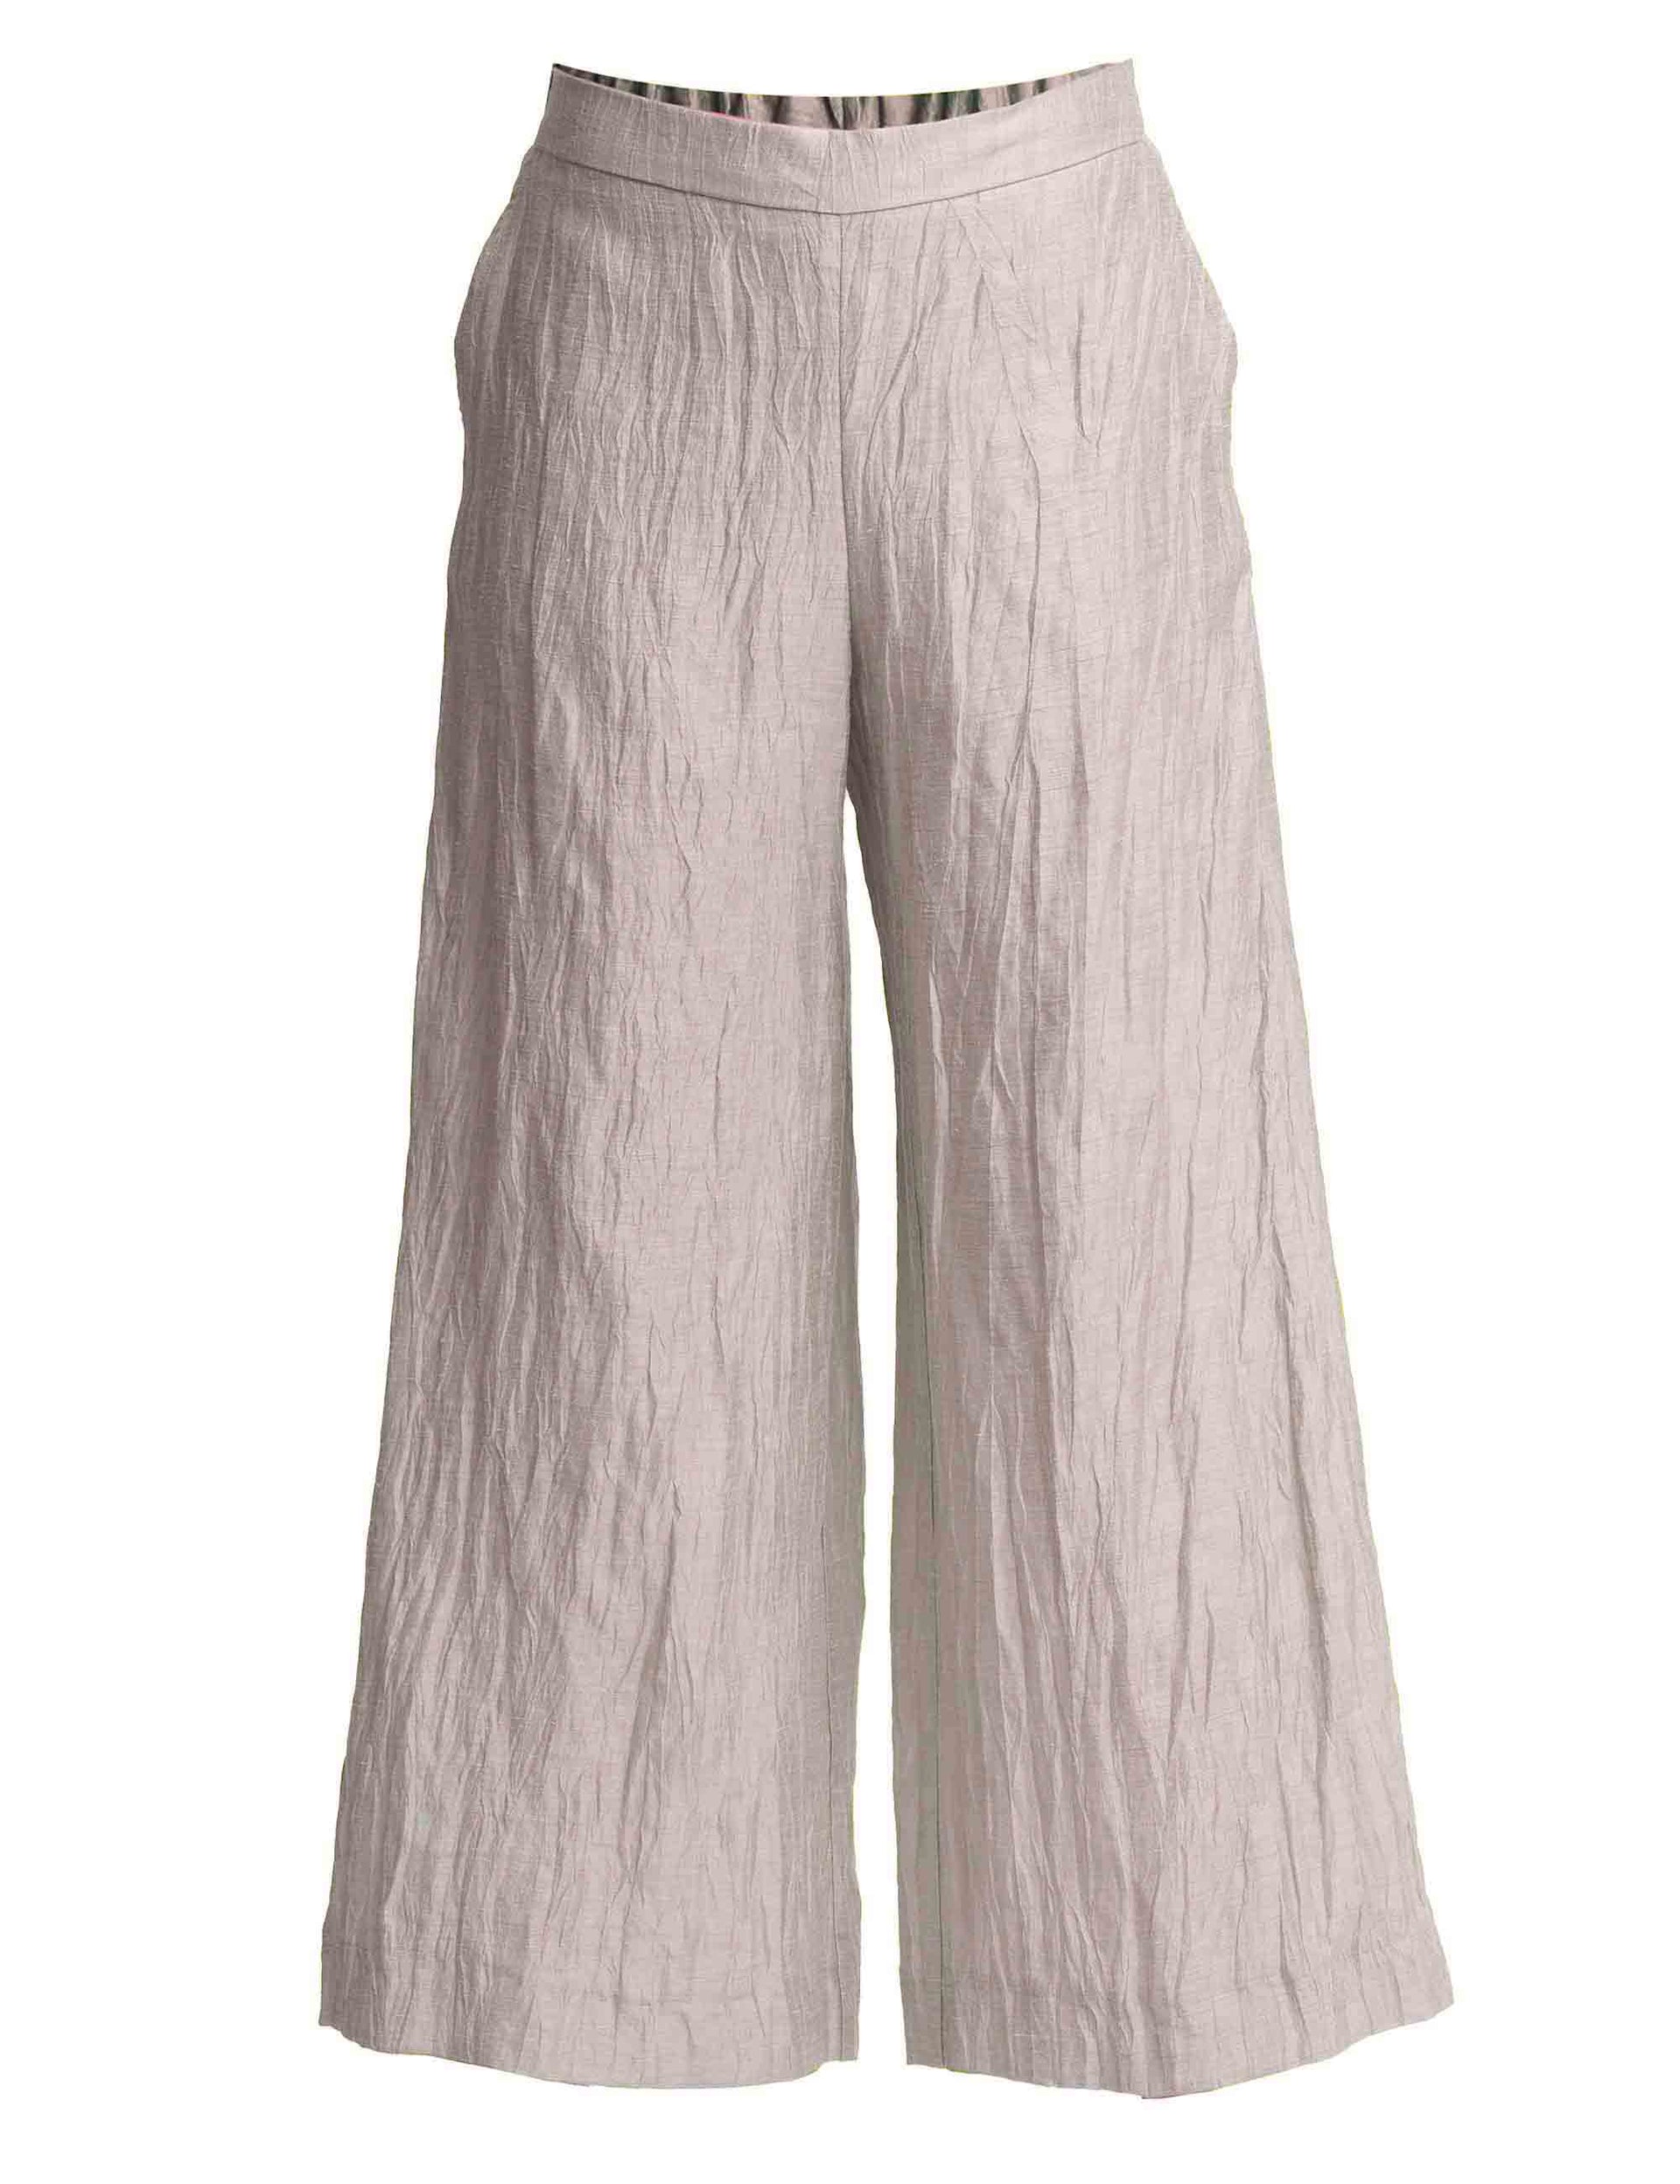 Pantaloni donna Froissé in lino bianco con gamba ampia